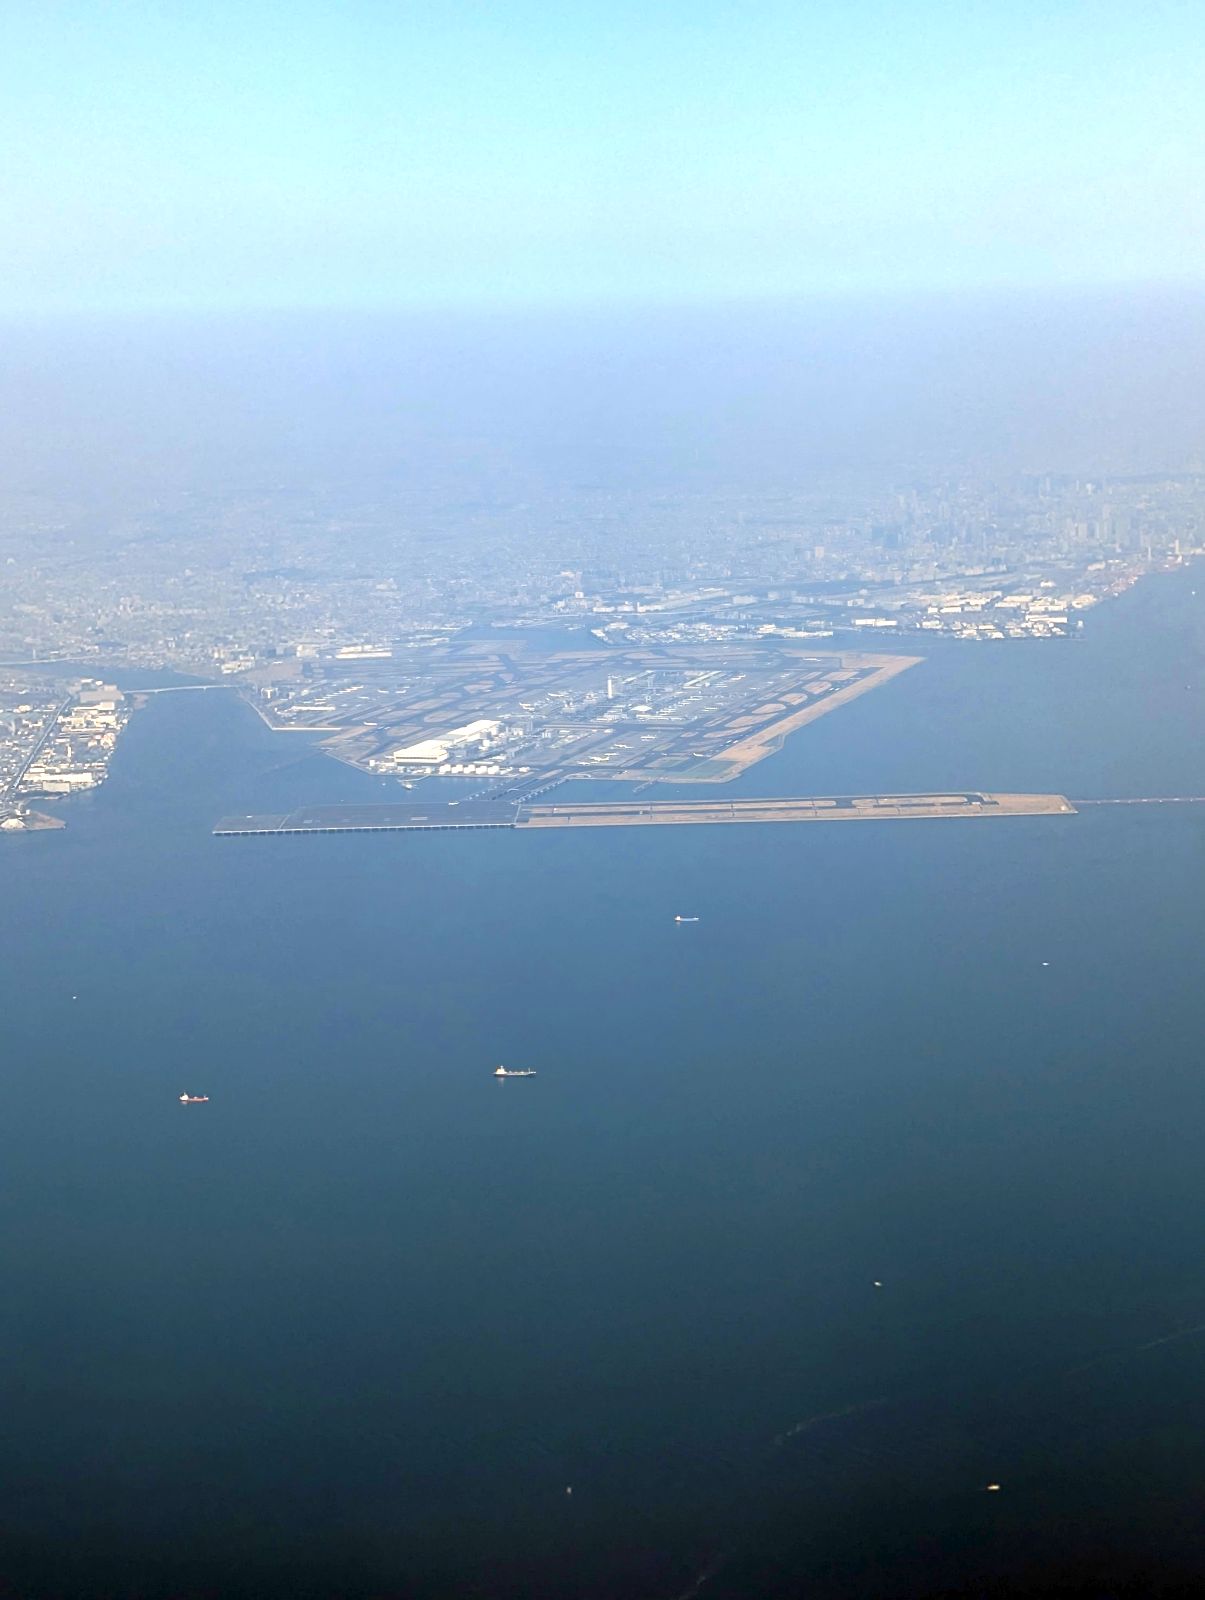 羽田空港を上から見た図